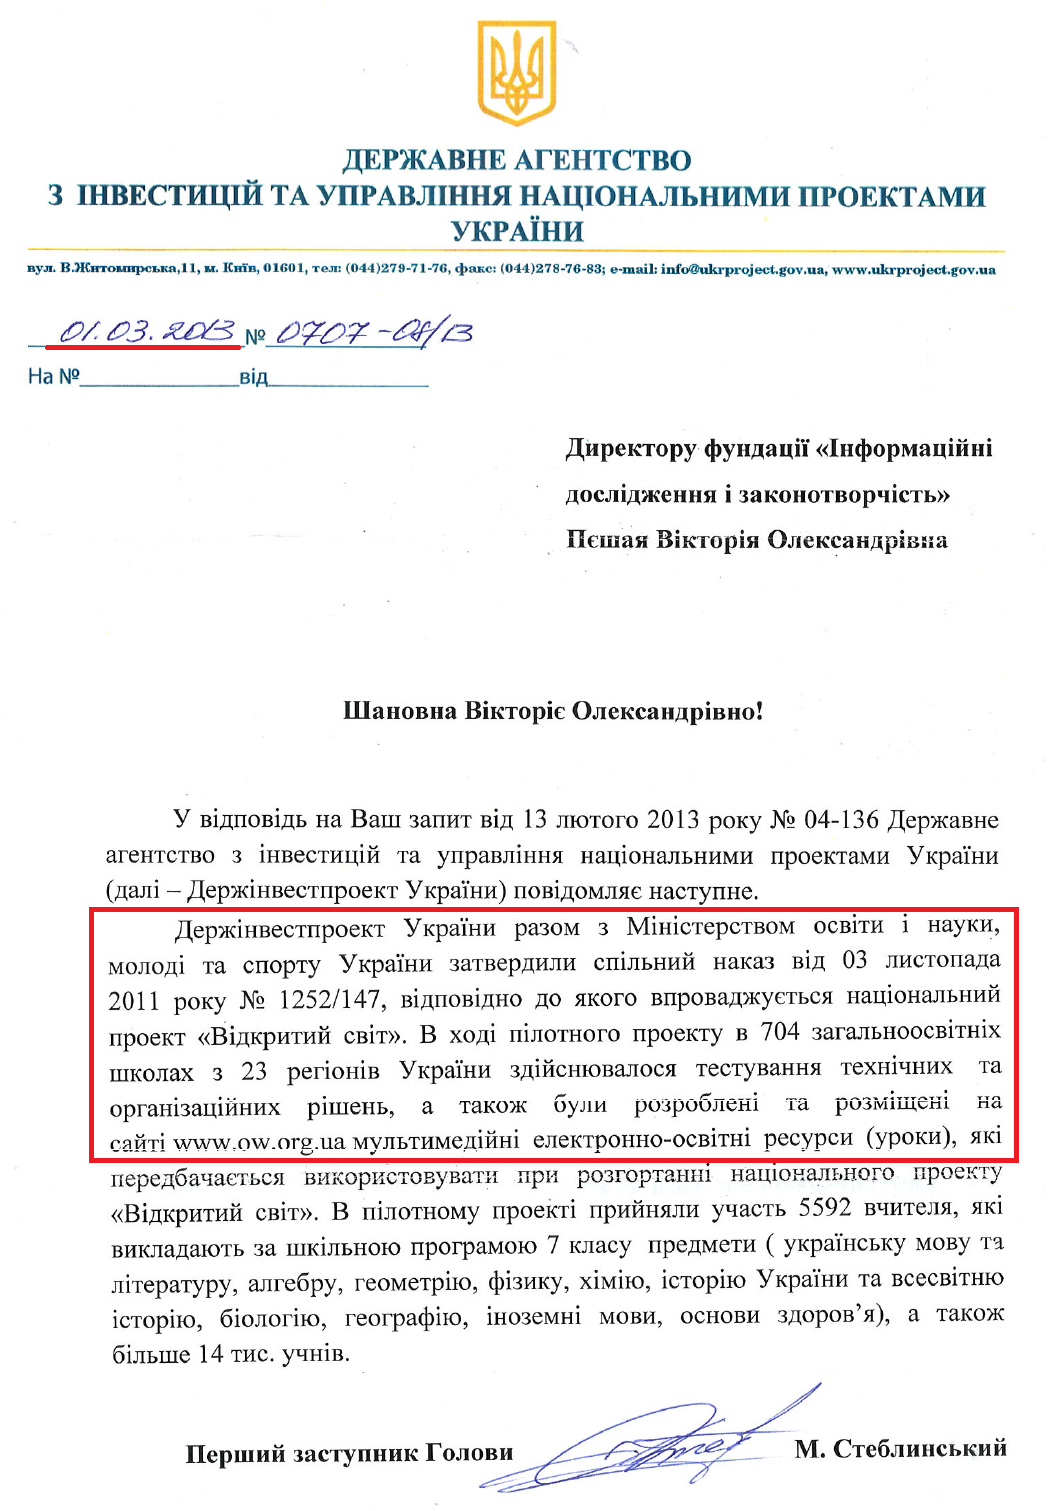 Лист Першого заступника Голови Держінвестпроекту України М.Стеблинського від 1 березня 2013 року